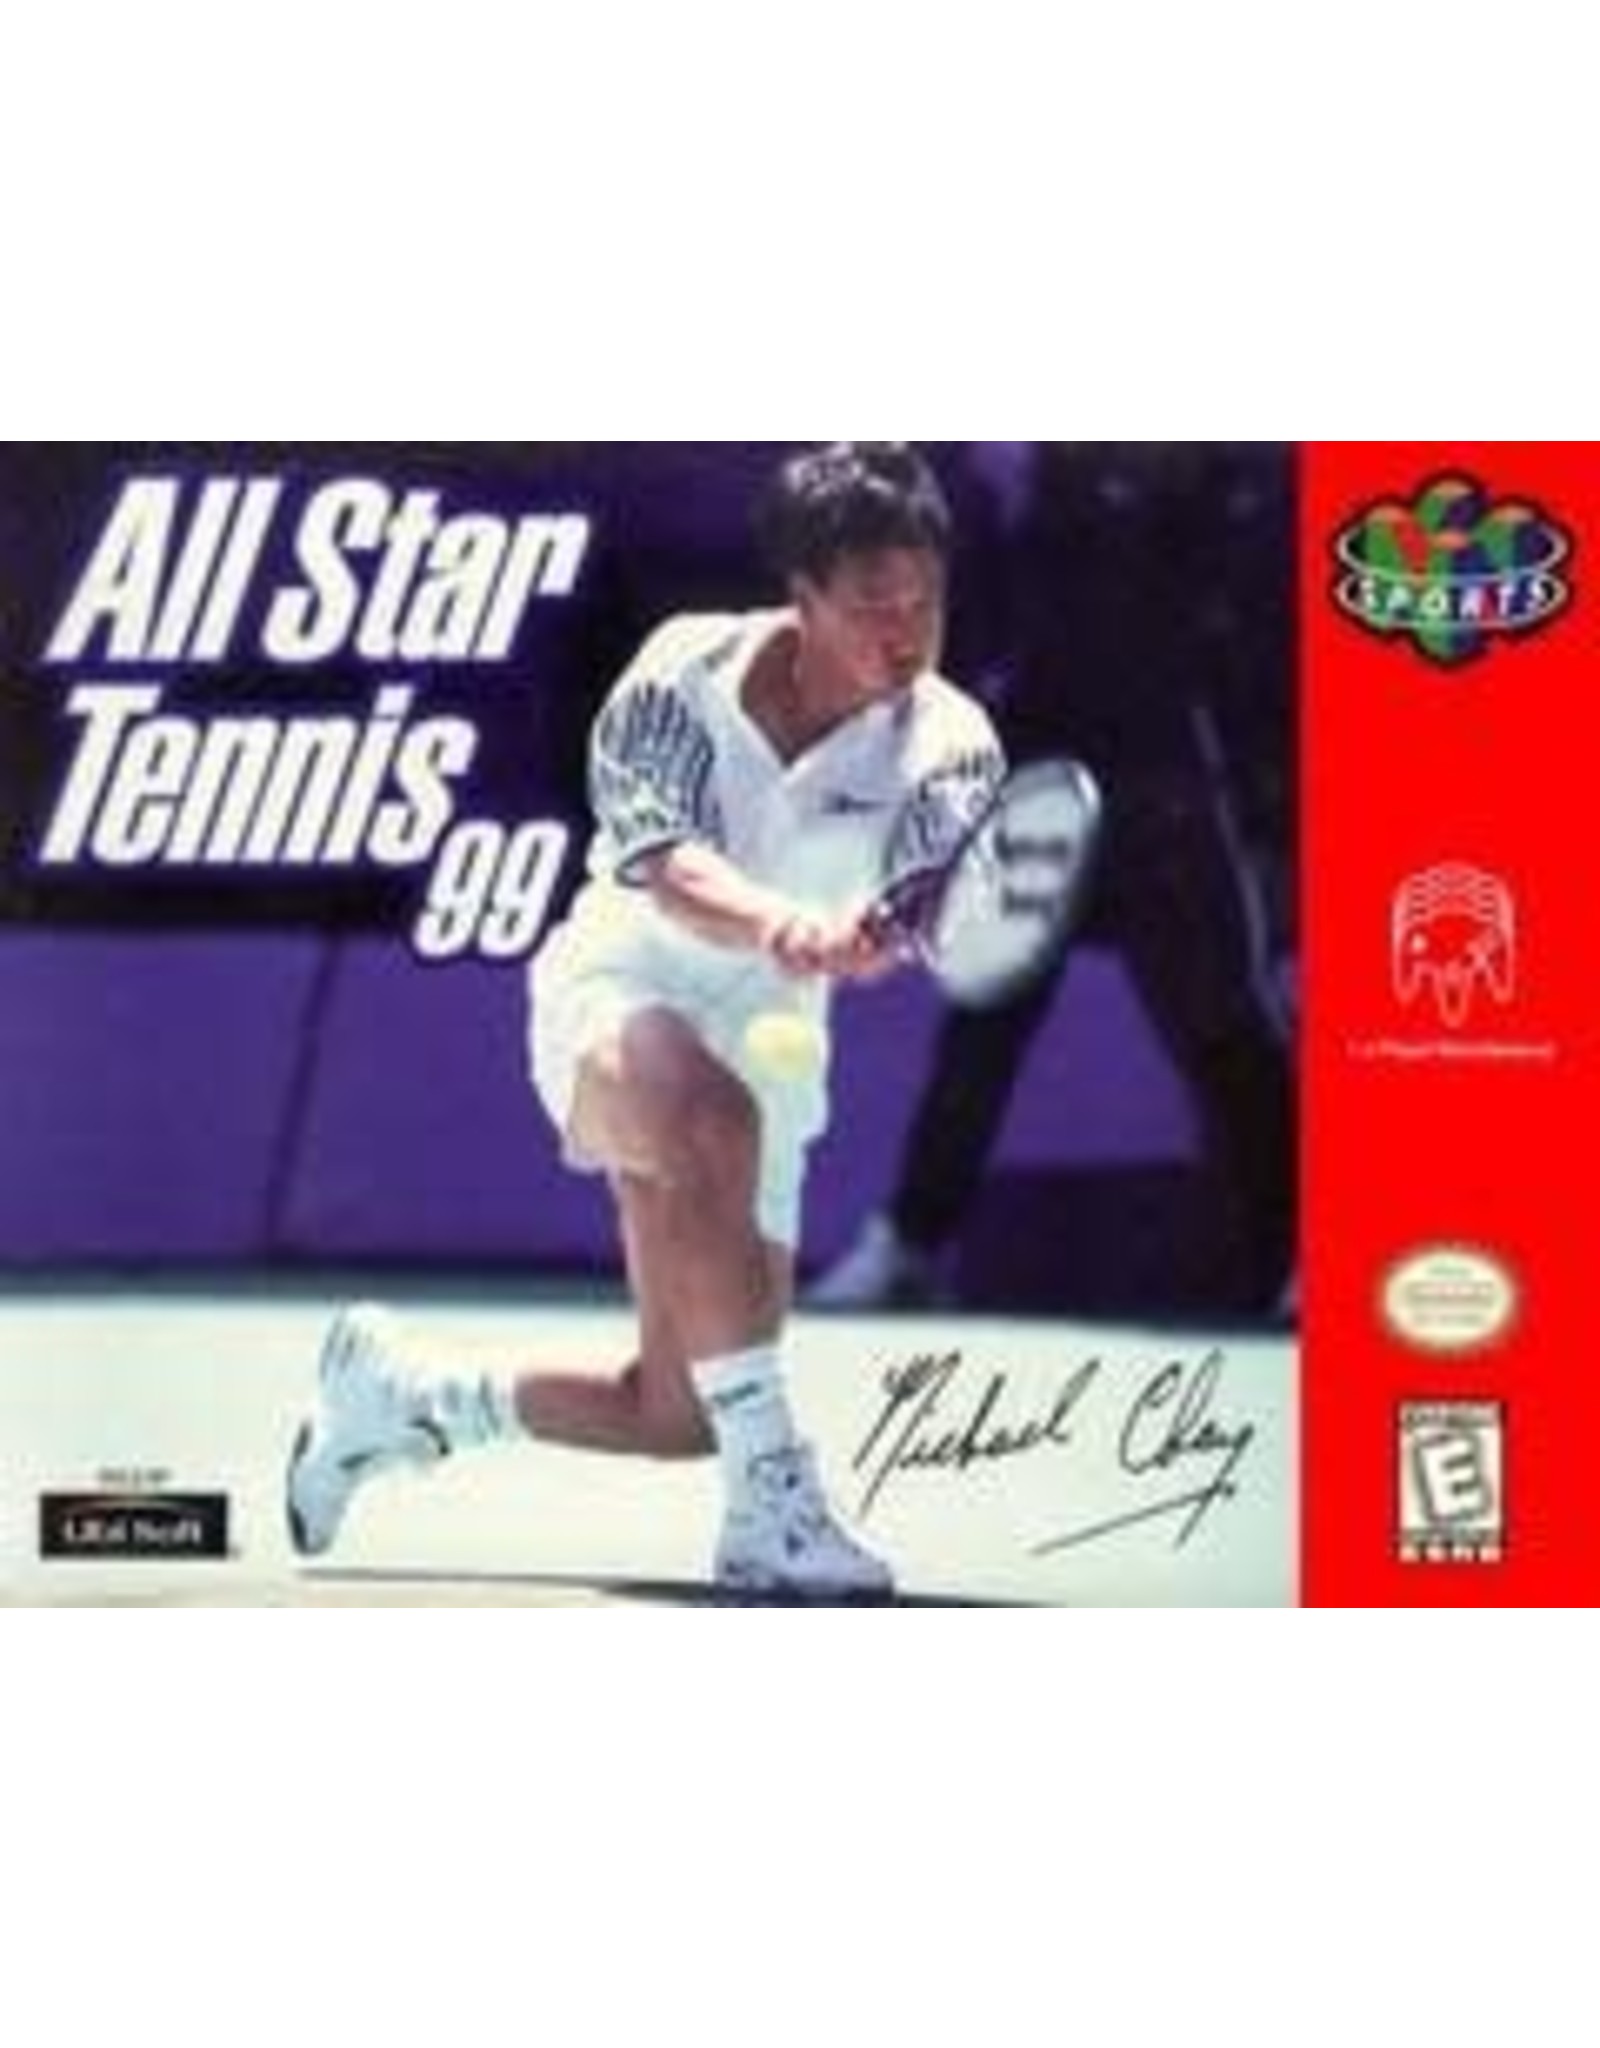 Nintendo 64 All-Star Tennis 99 (Cart Only)